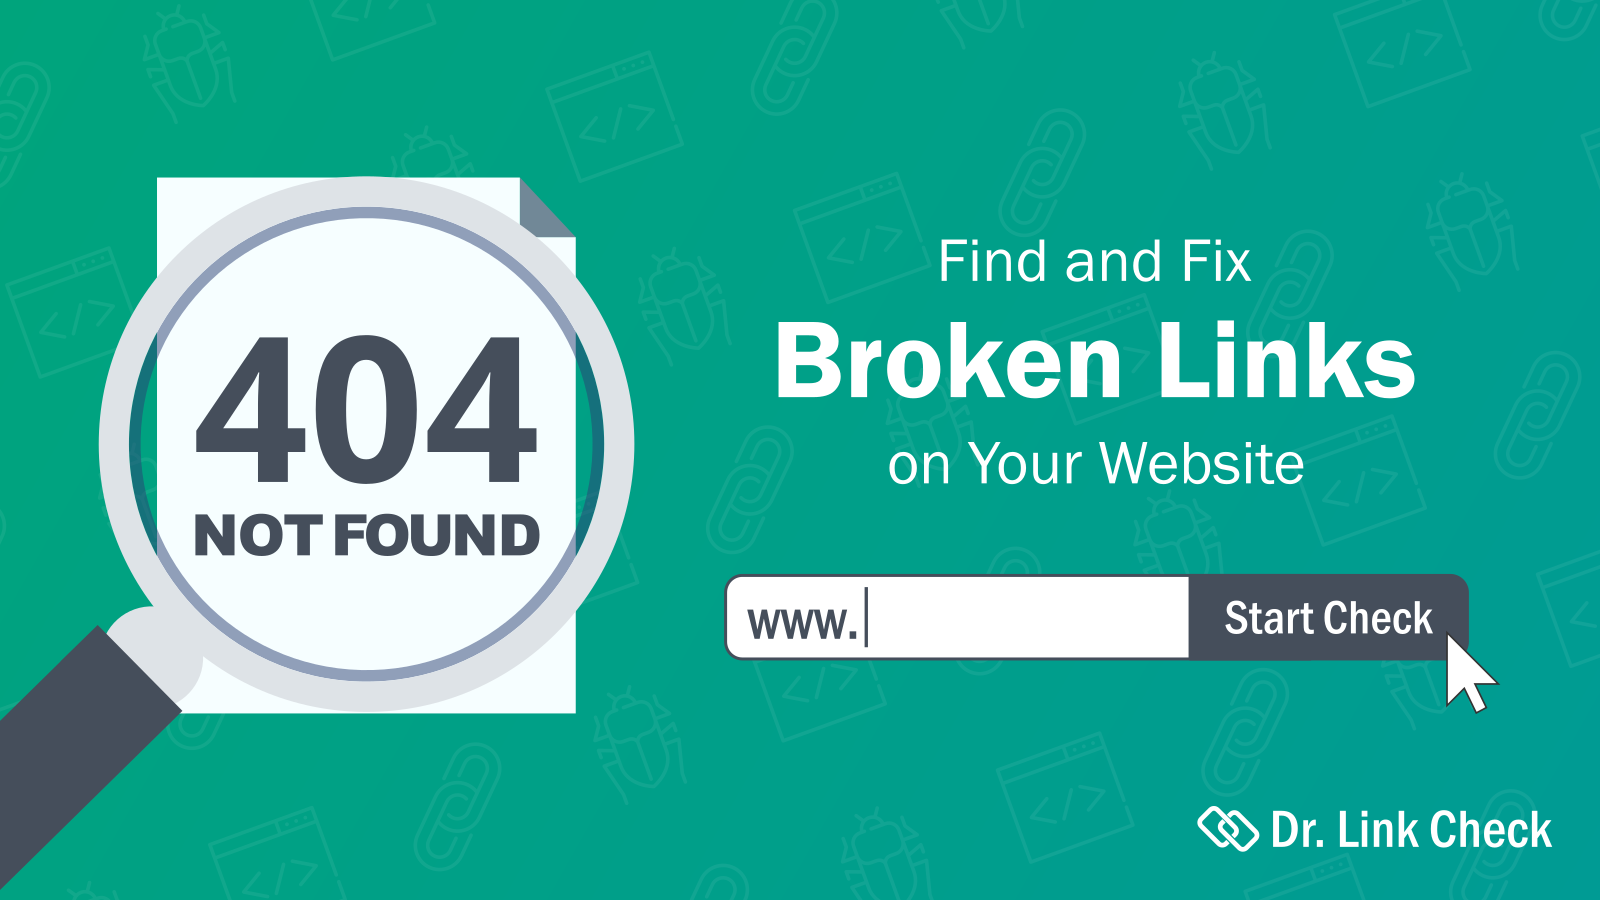 Find og reparer ødelagte links på dit website med Dr. Link Check